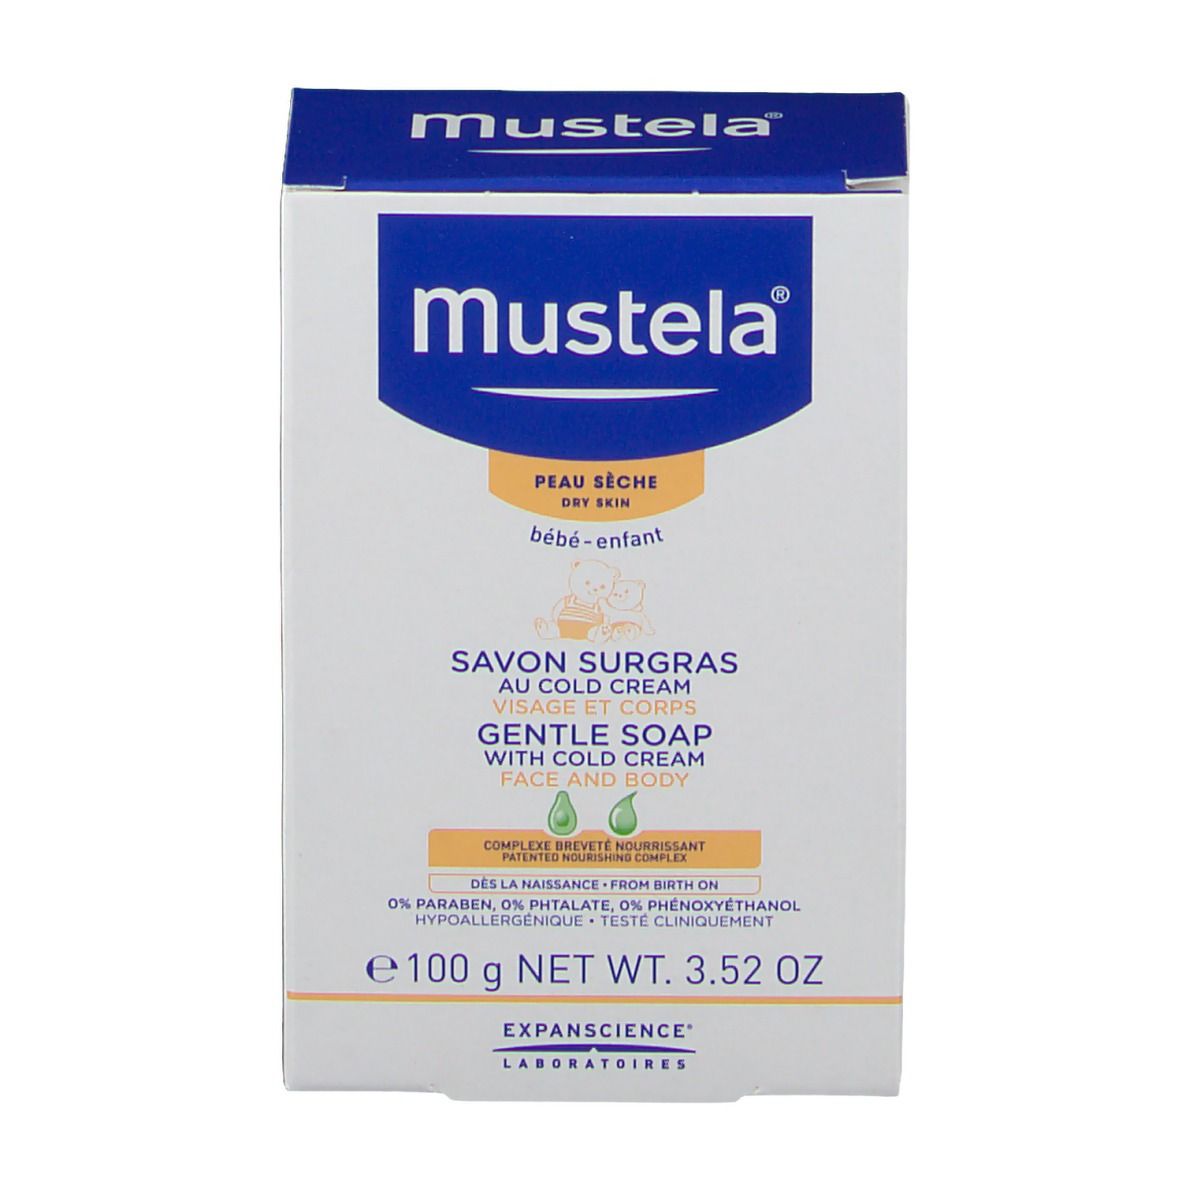 mustela® Savon Surgras au Cold cream